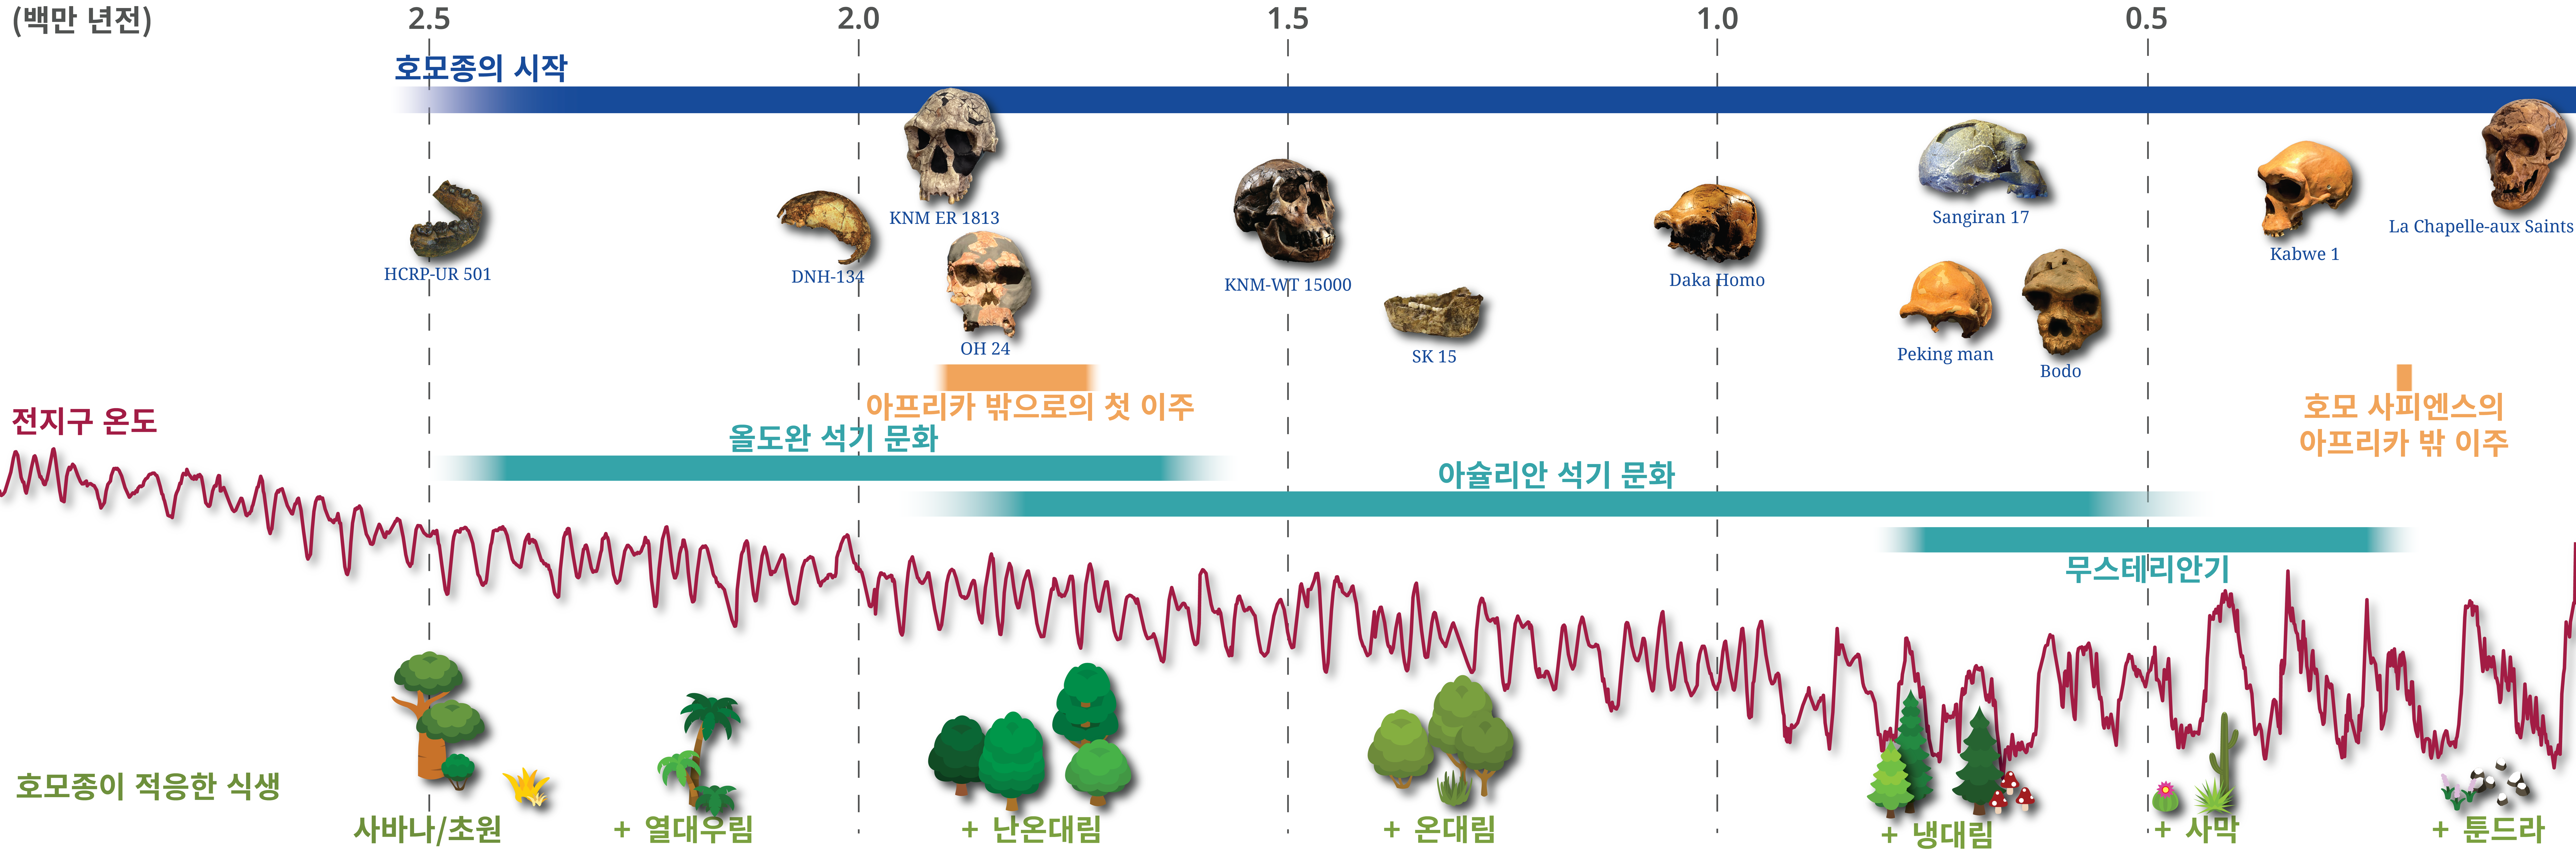 호모종 진화와 식생 변화 연표